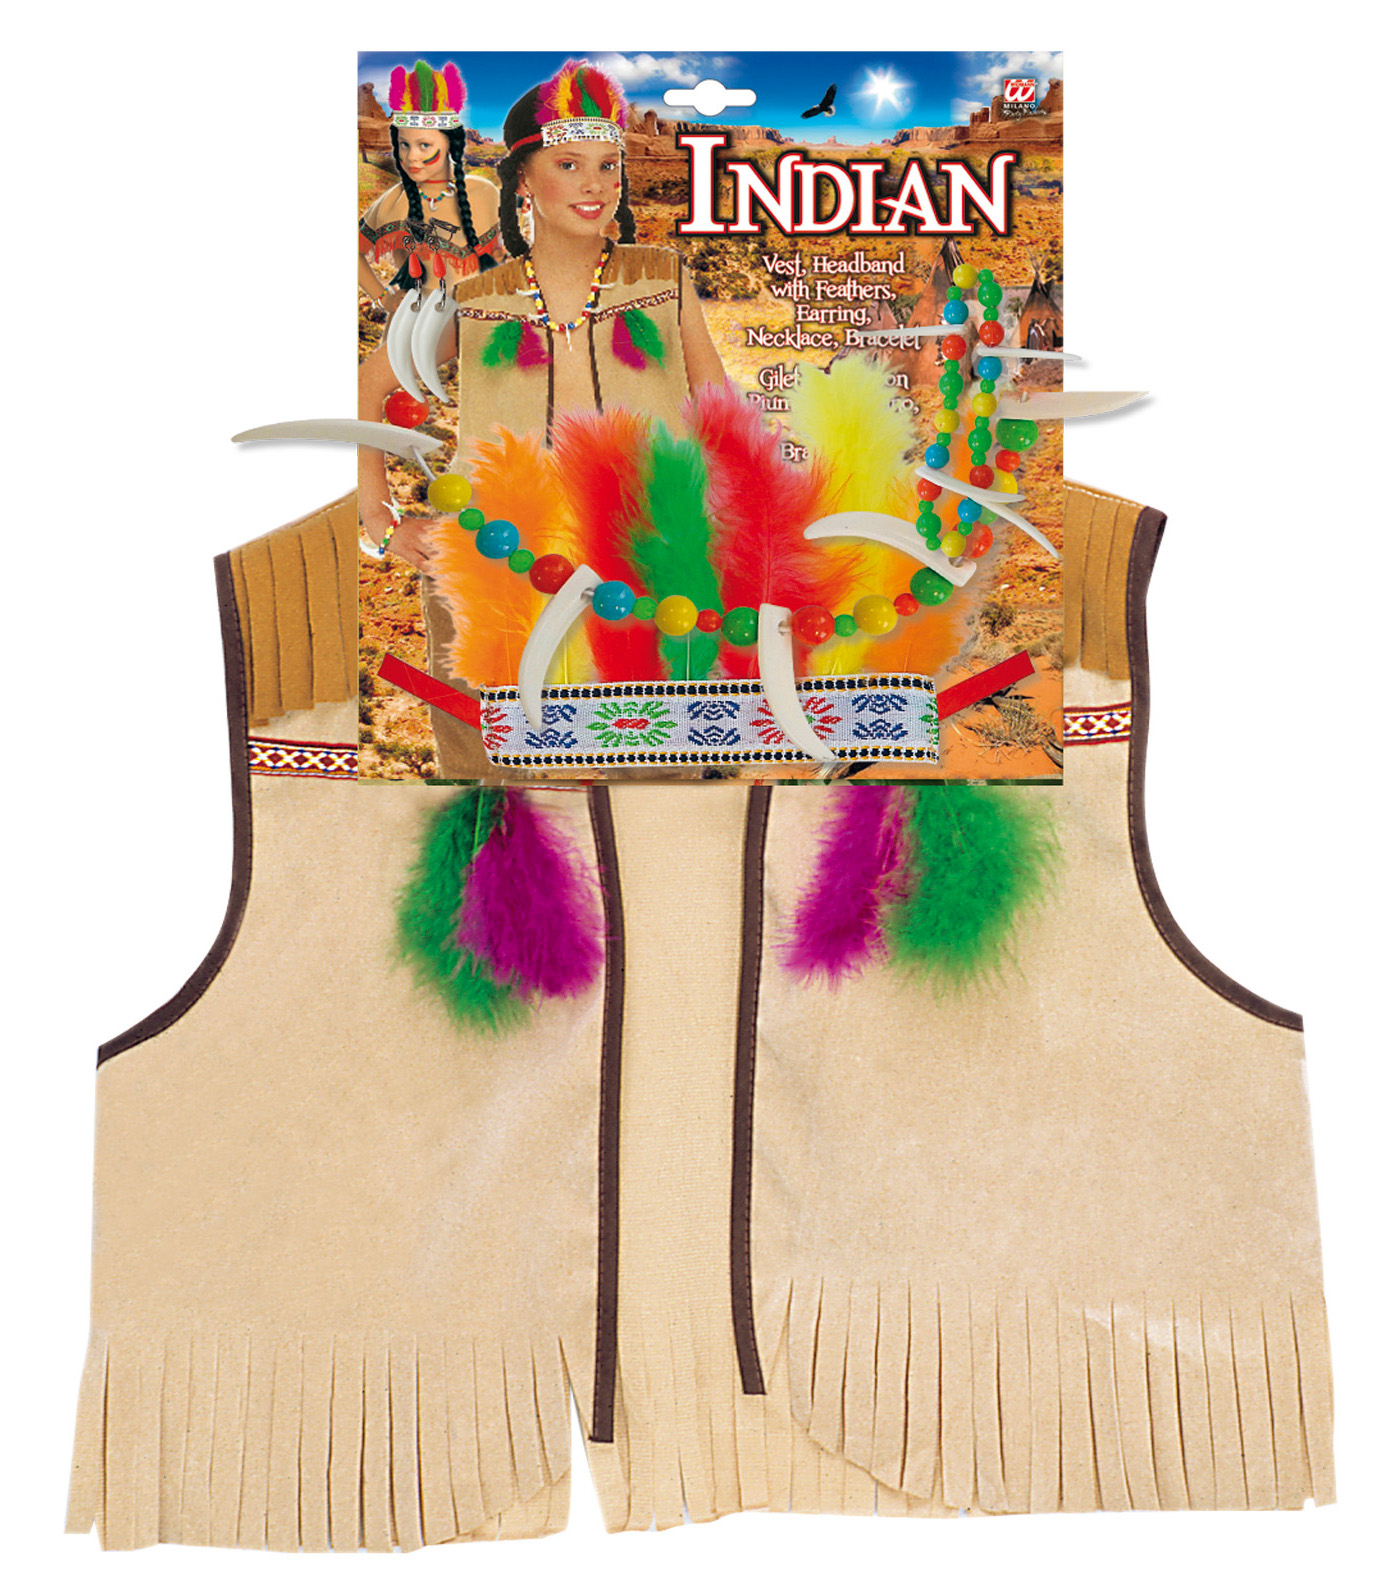 Dětská indiánská vesta s doplňky